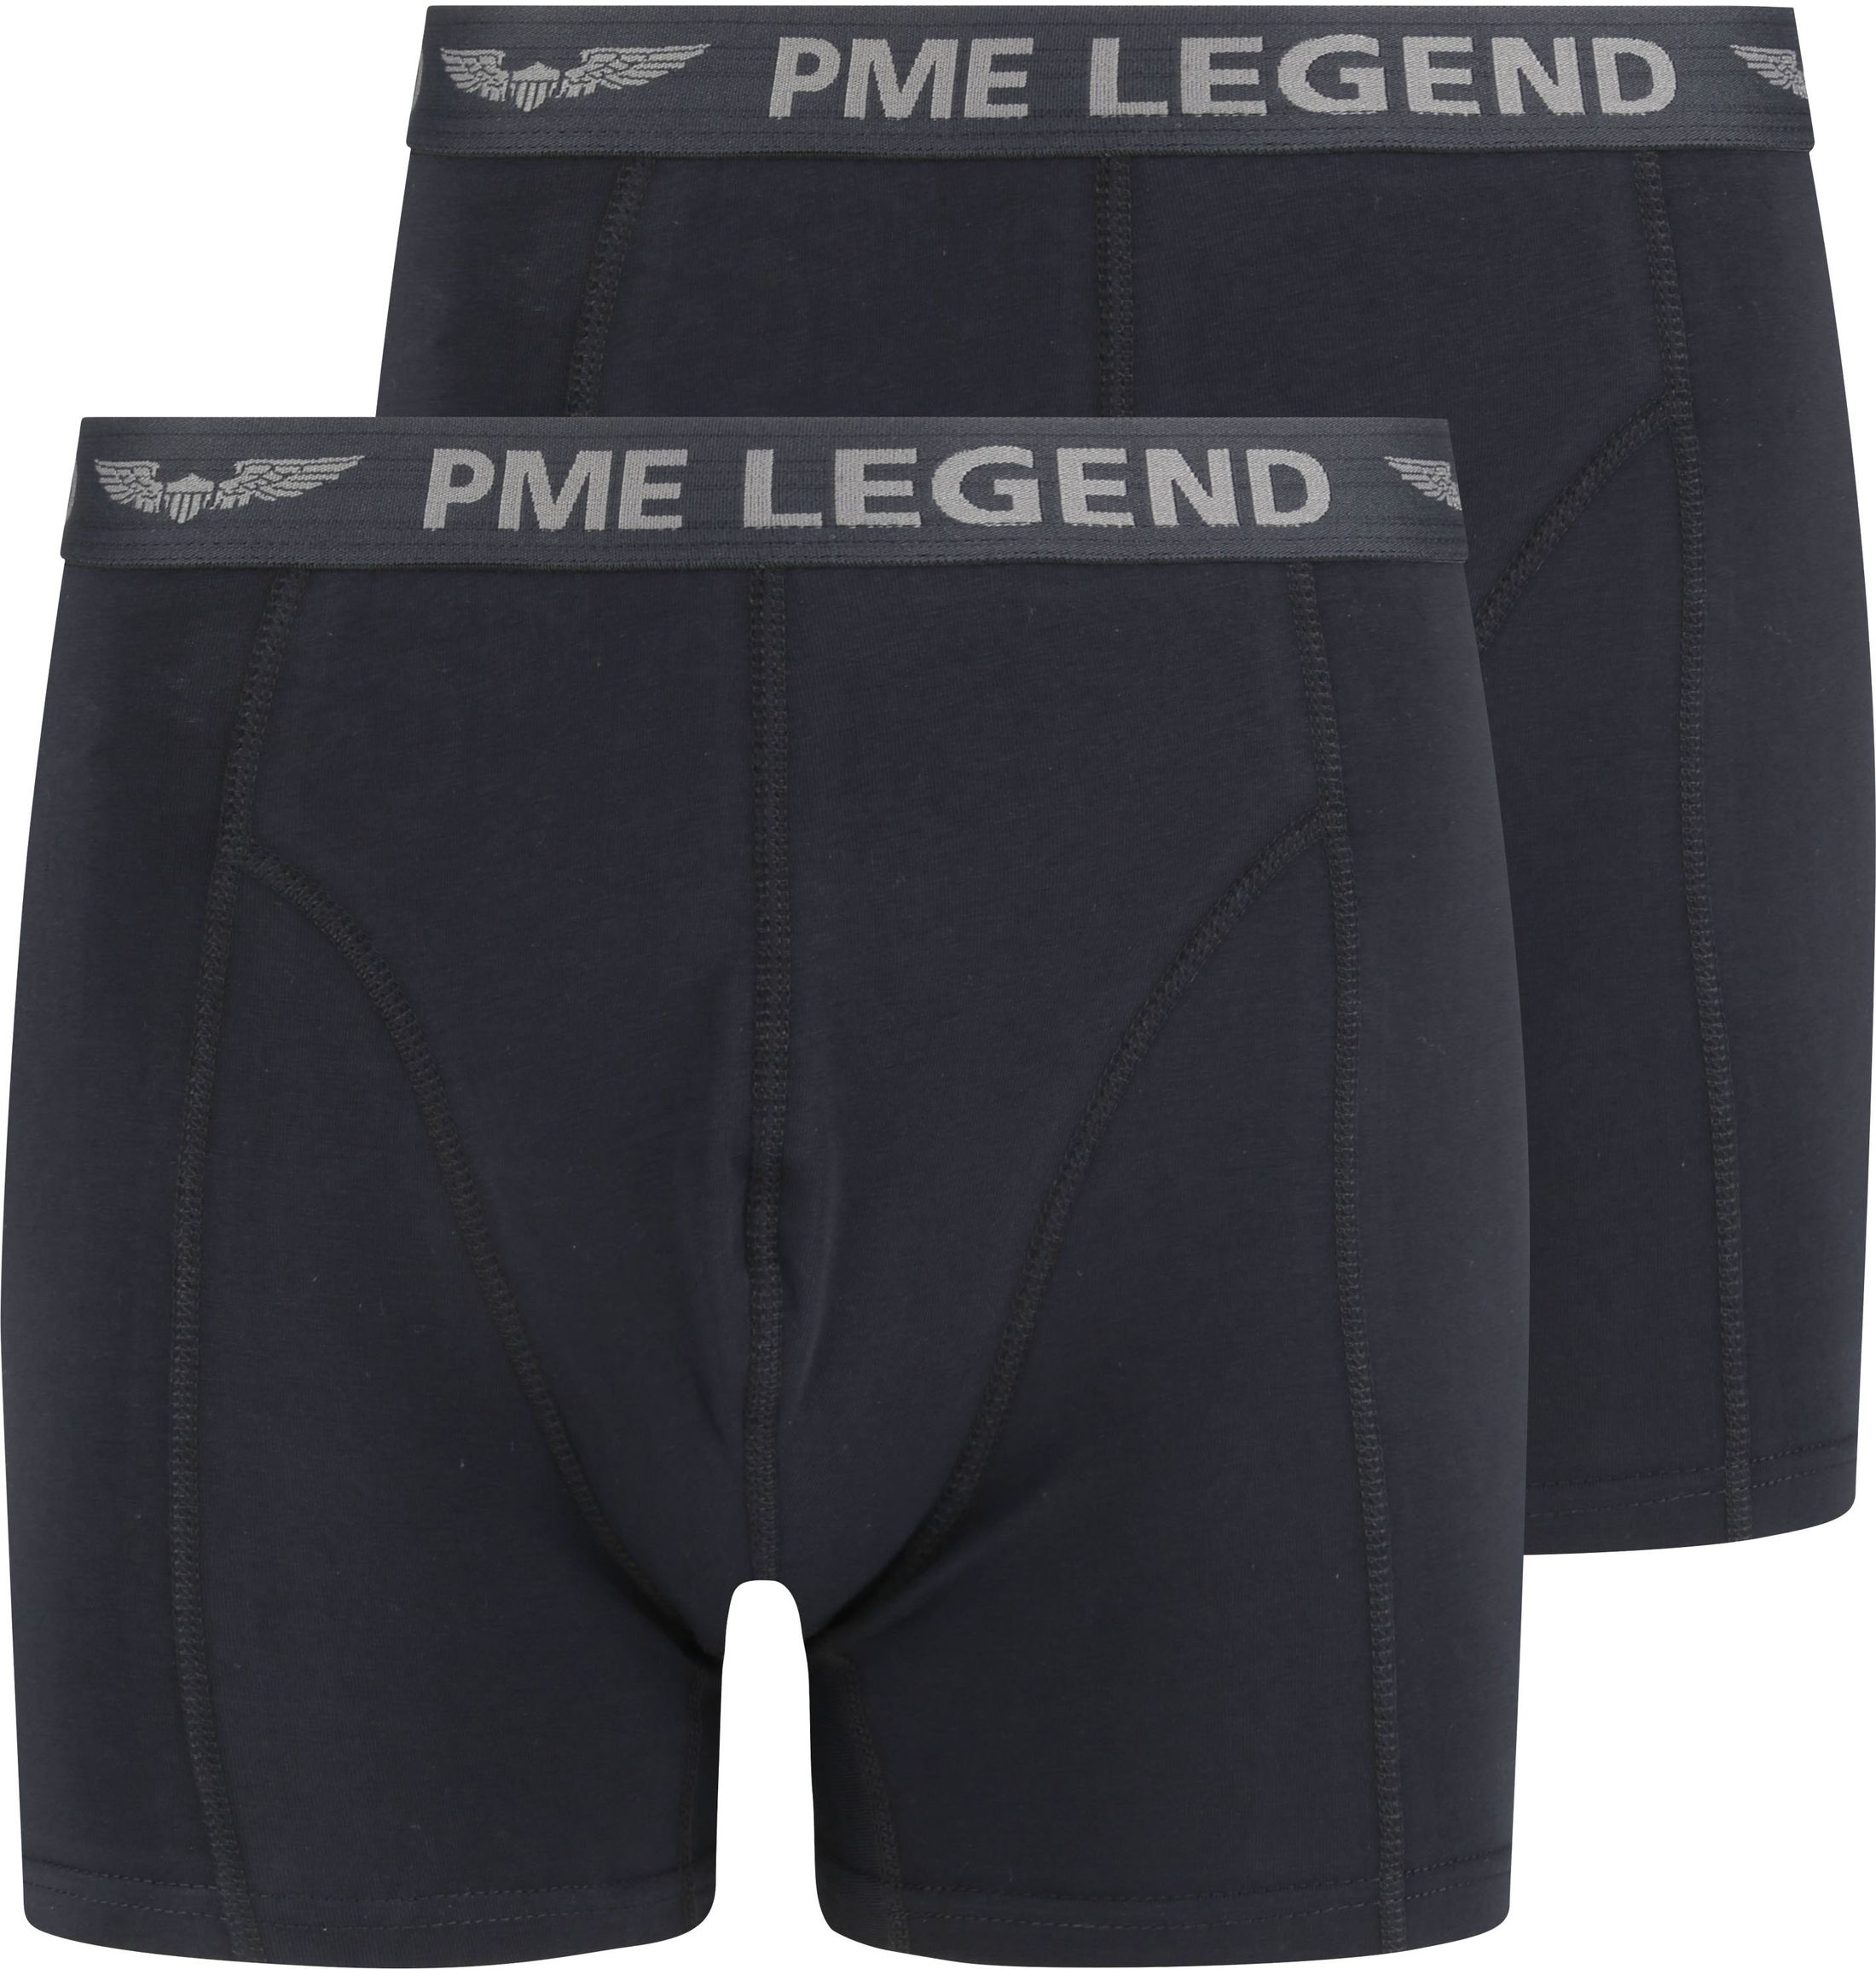 PME Legend Boxer-shorts Lot de 2 Uni Noir taille 3XL